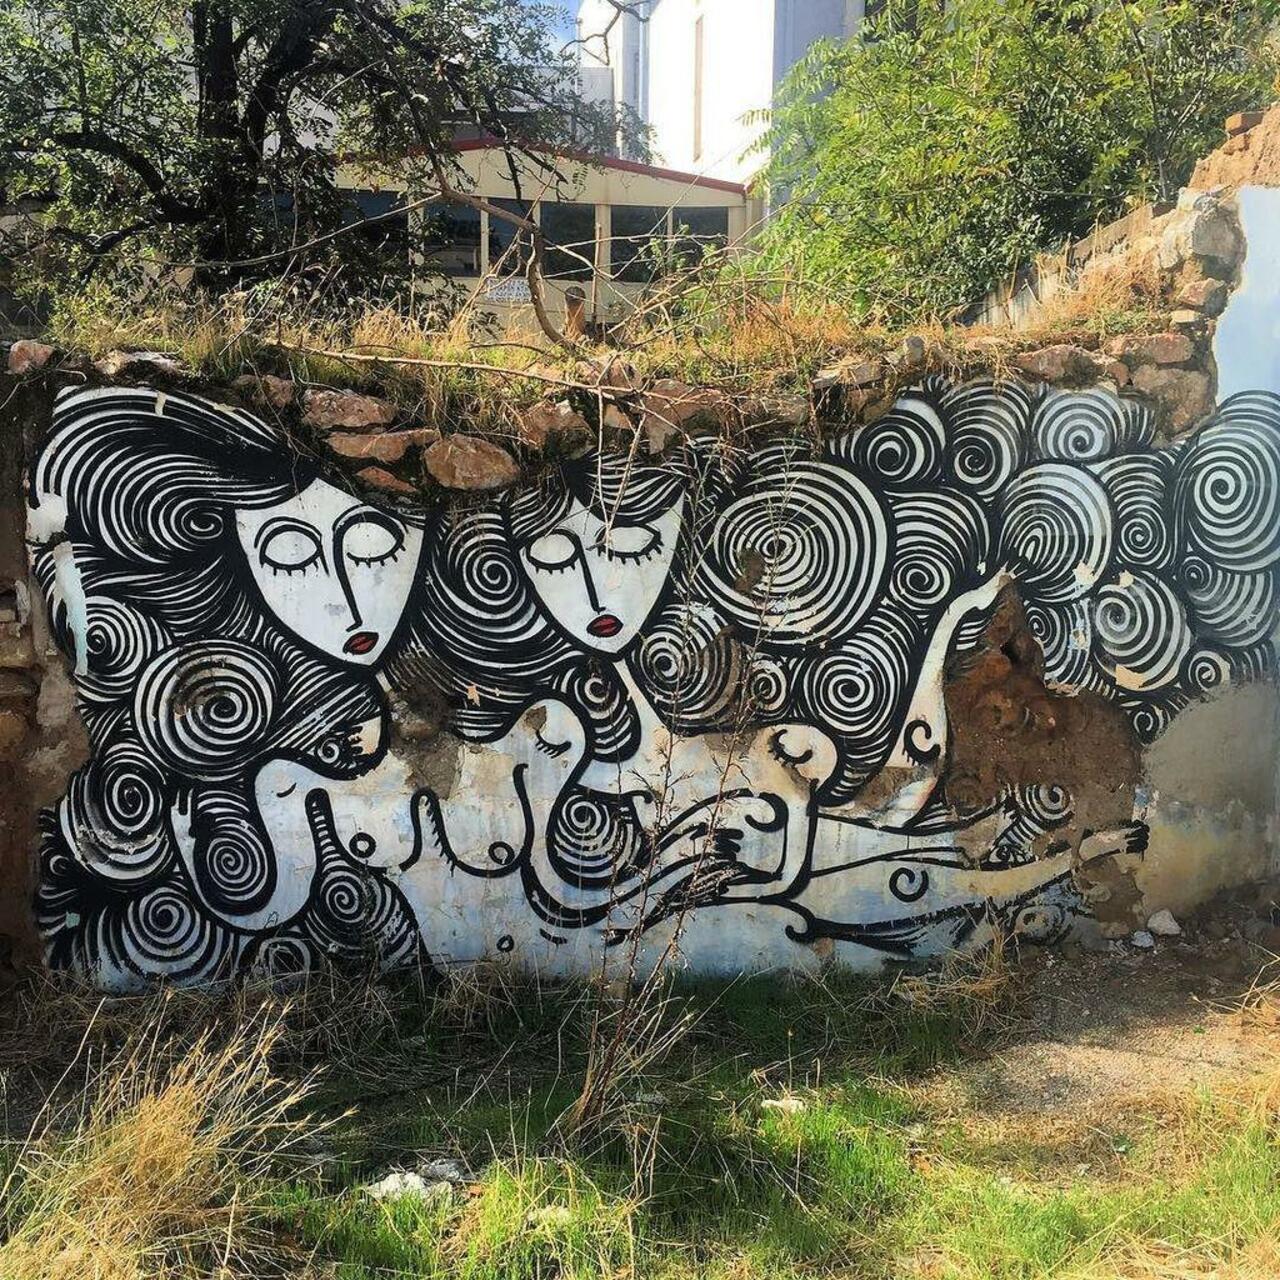 Graffiti Mural
Sonke
Athens, Greece
#graff #graffiti #graffitiathens #outsider #outsiderart #street #streetart #str… http://t.co/apsIgslbDs